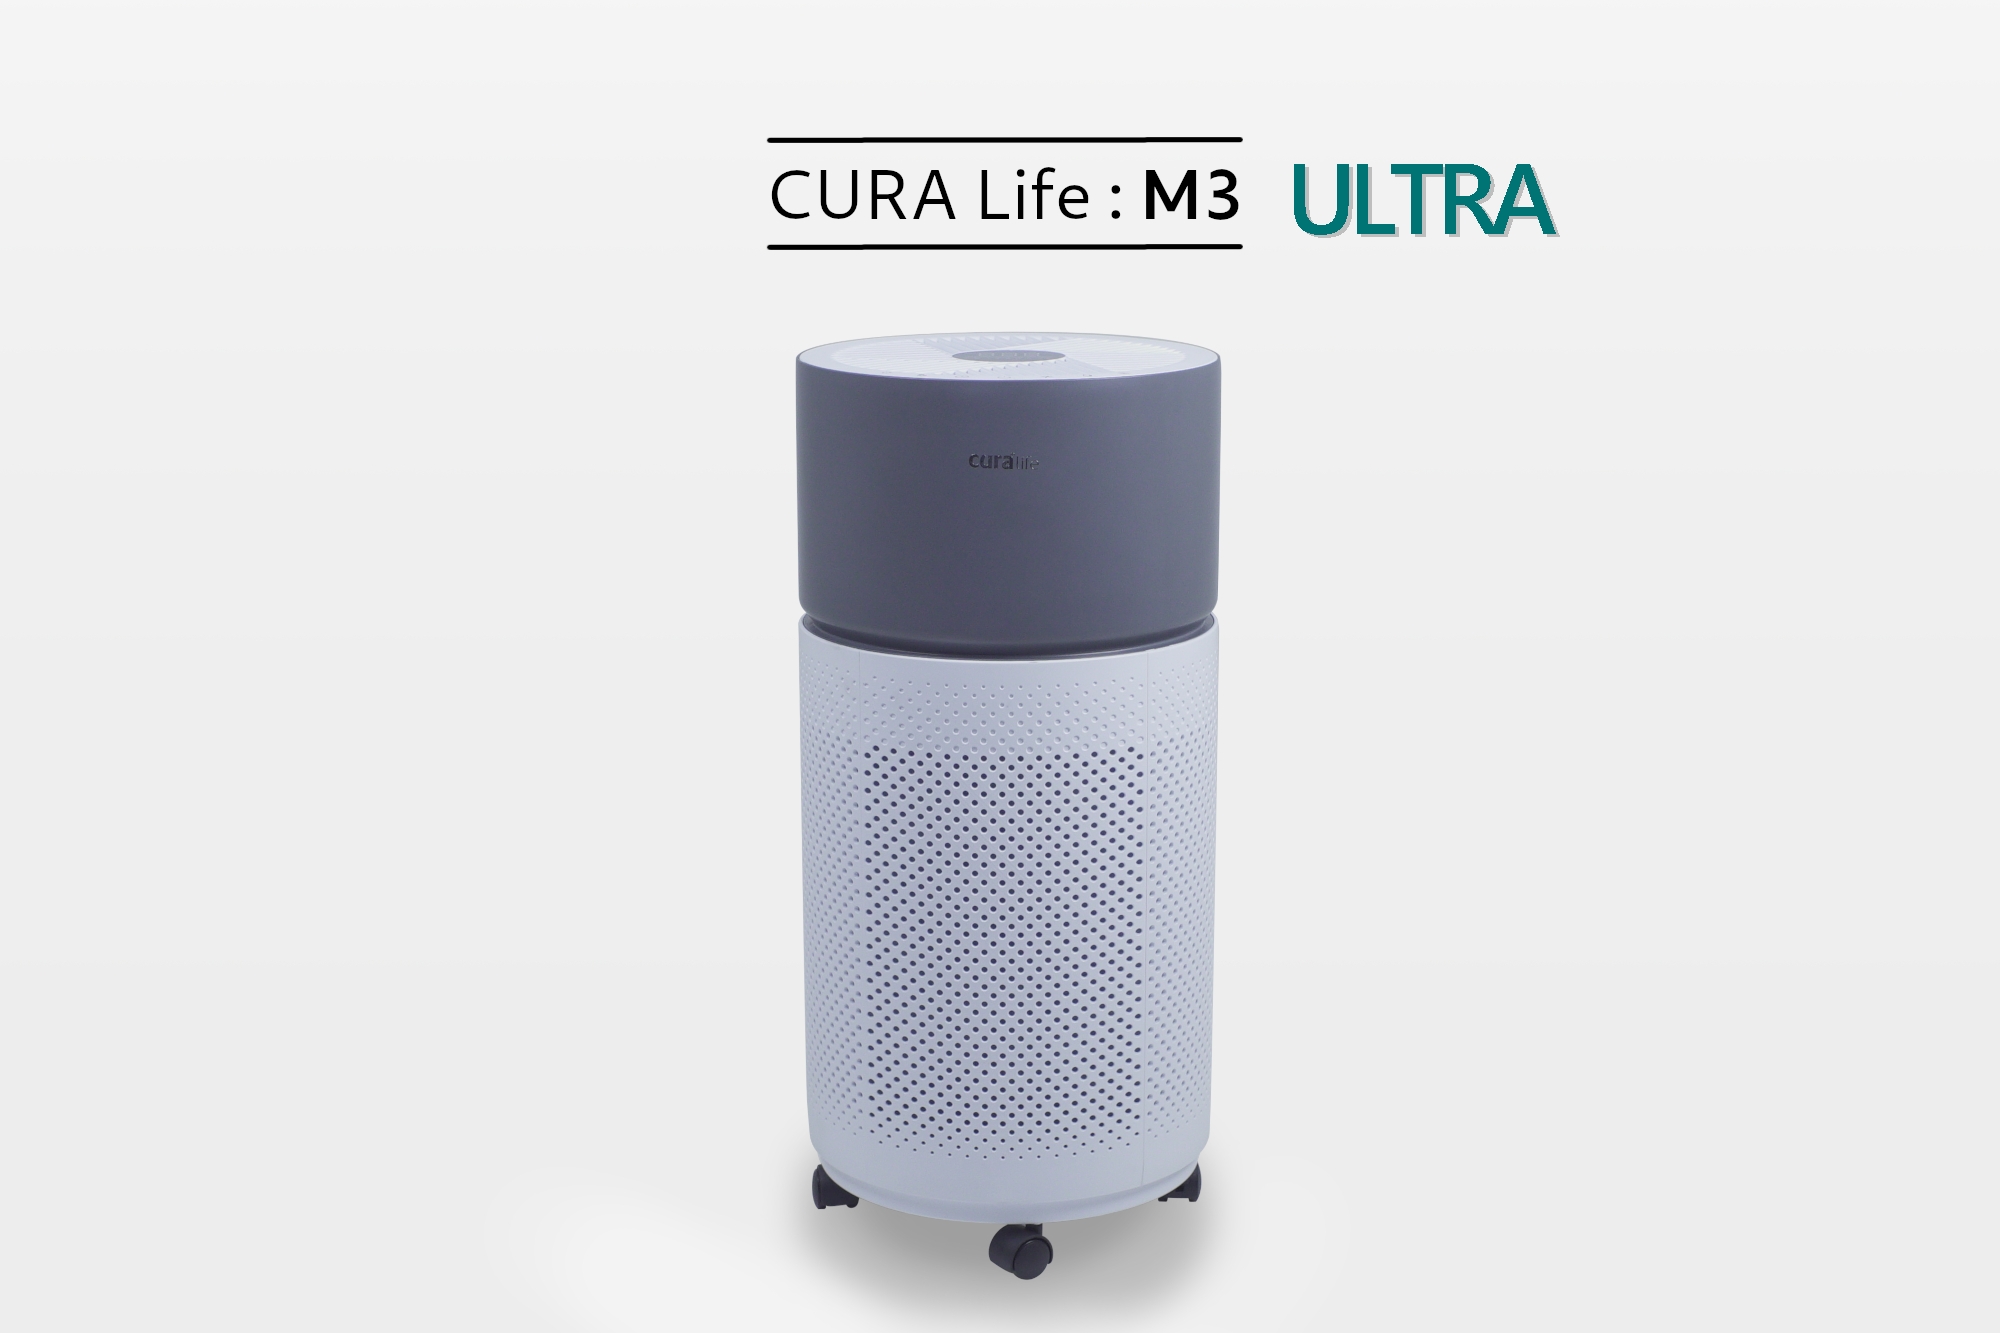 เครื่องฟอกอากาศ กรองดักกำาจัดฝุ่นด้วยระบบ Pre-filter ร่วมด้วยระบบ HEPA filter จึงทำให้สามารถดักจับฝุ่นละอองในอากาศที่มีขนาดเล็กไม่เกิน 25 ไมครอน หรือ PM 2.5 ได้ ดักจับกลิ่นด้วย Activated Carbon ยี่ห้อ CURA Life รุ่น M3 ULTRA